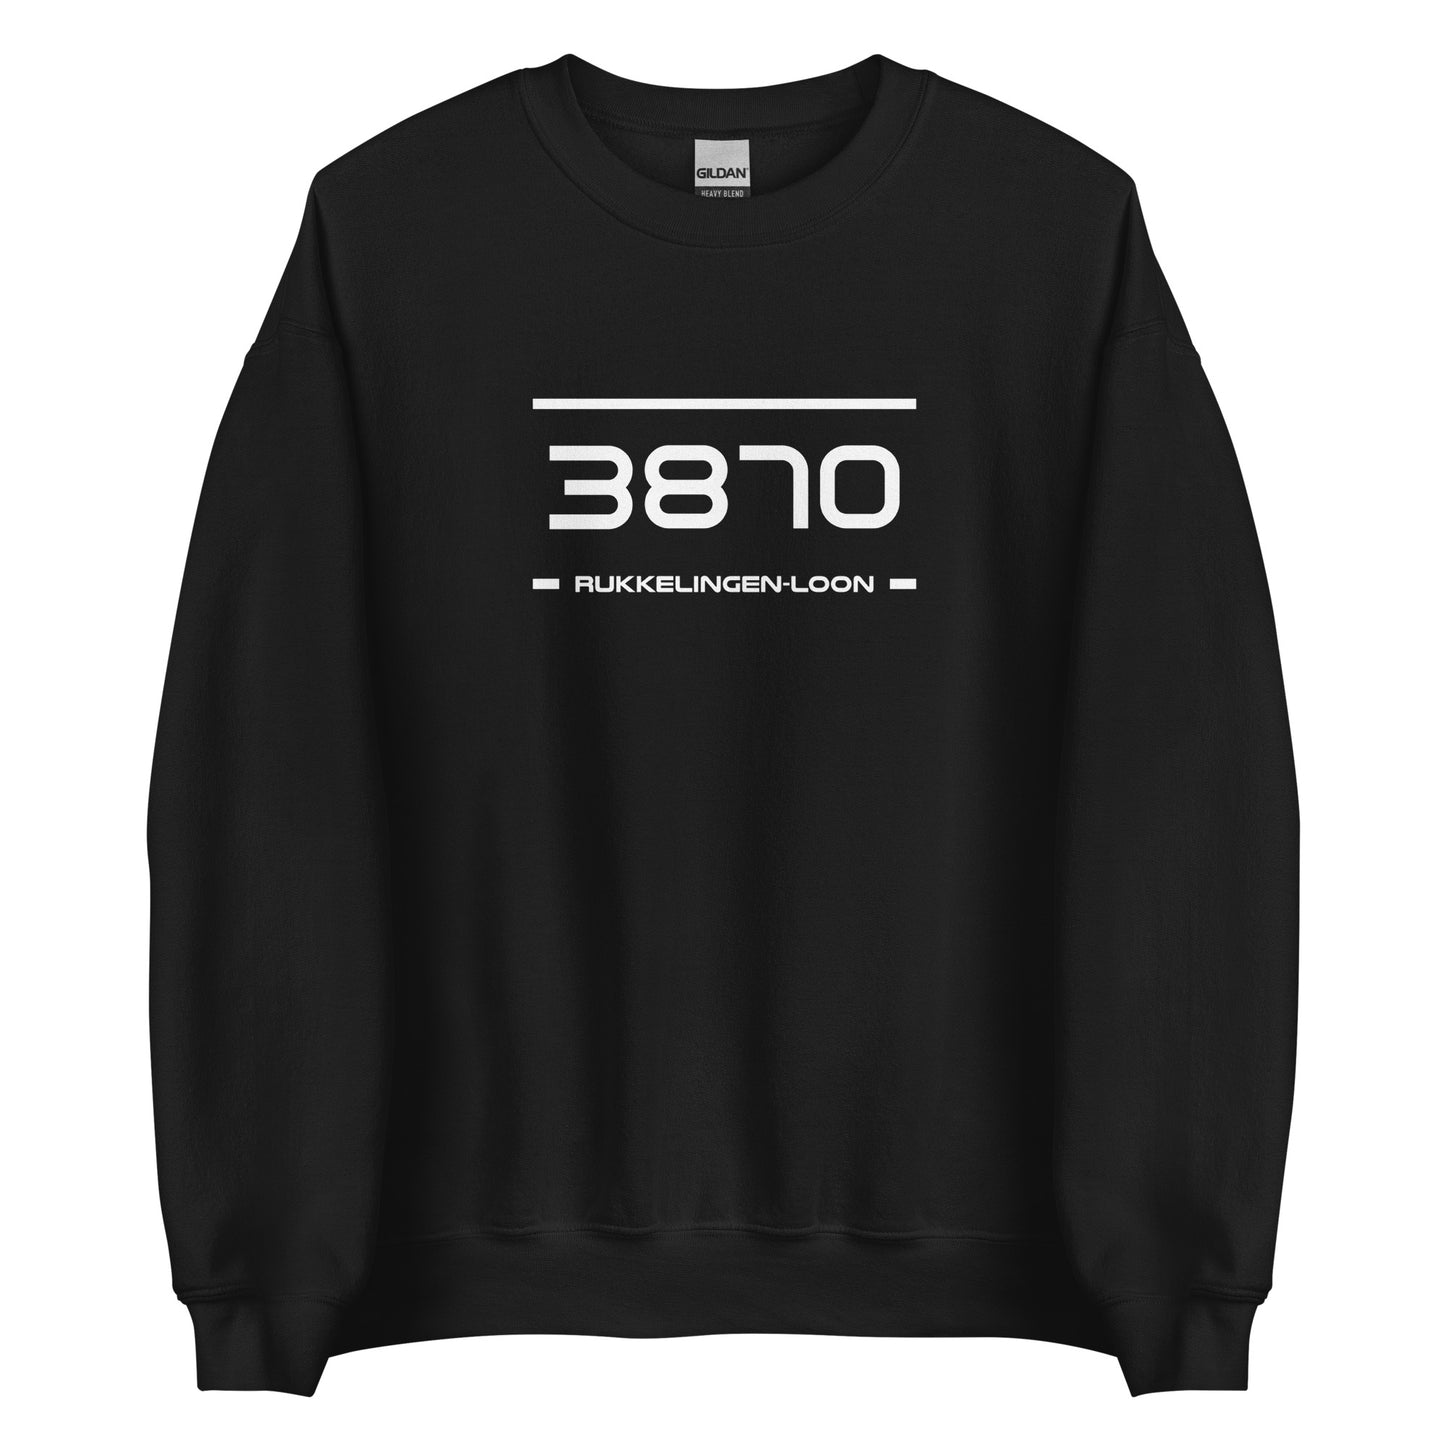 Sweater - 3870 - Rukkelingen-Loon (M/V)